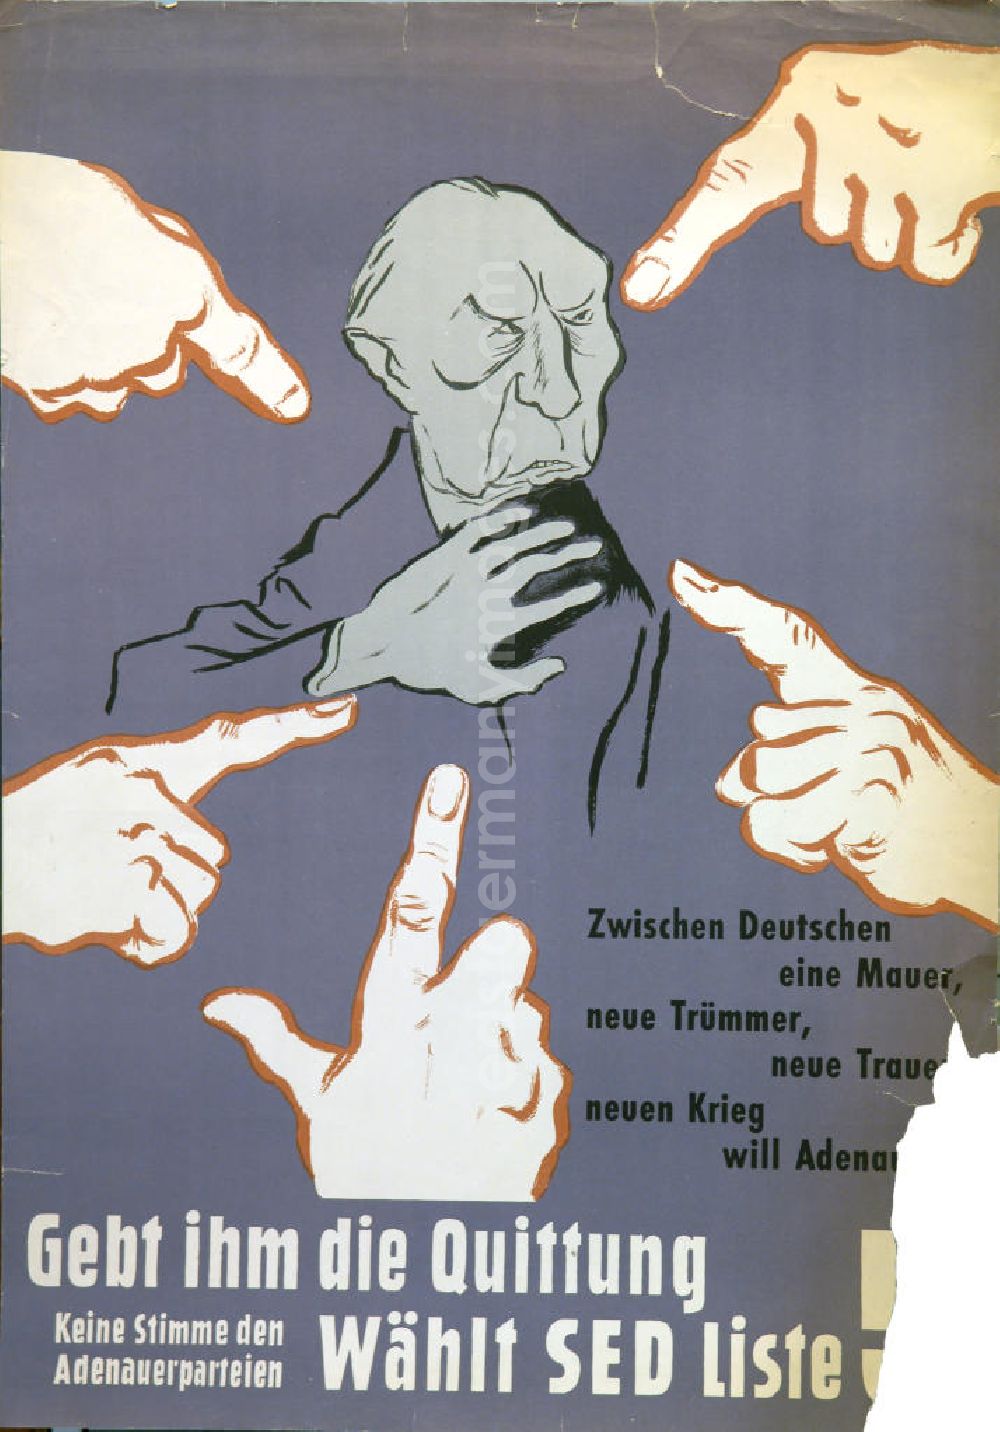 GDR photo archive: Berlin - Plakat von Herbert Sandberg Wählt SED-Liste! aus dem Jahr 1958, 59,